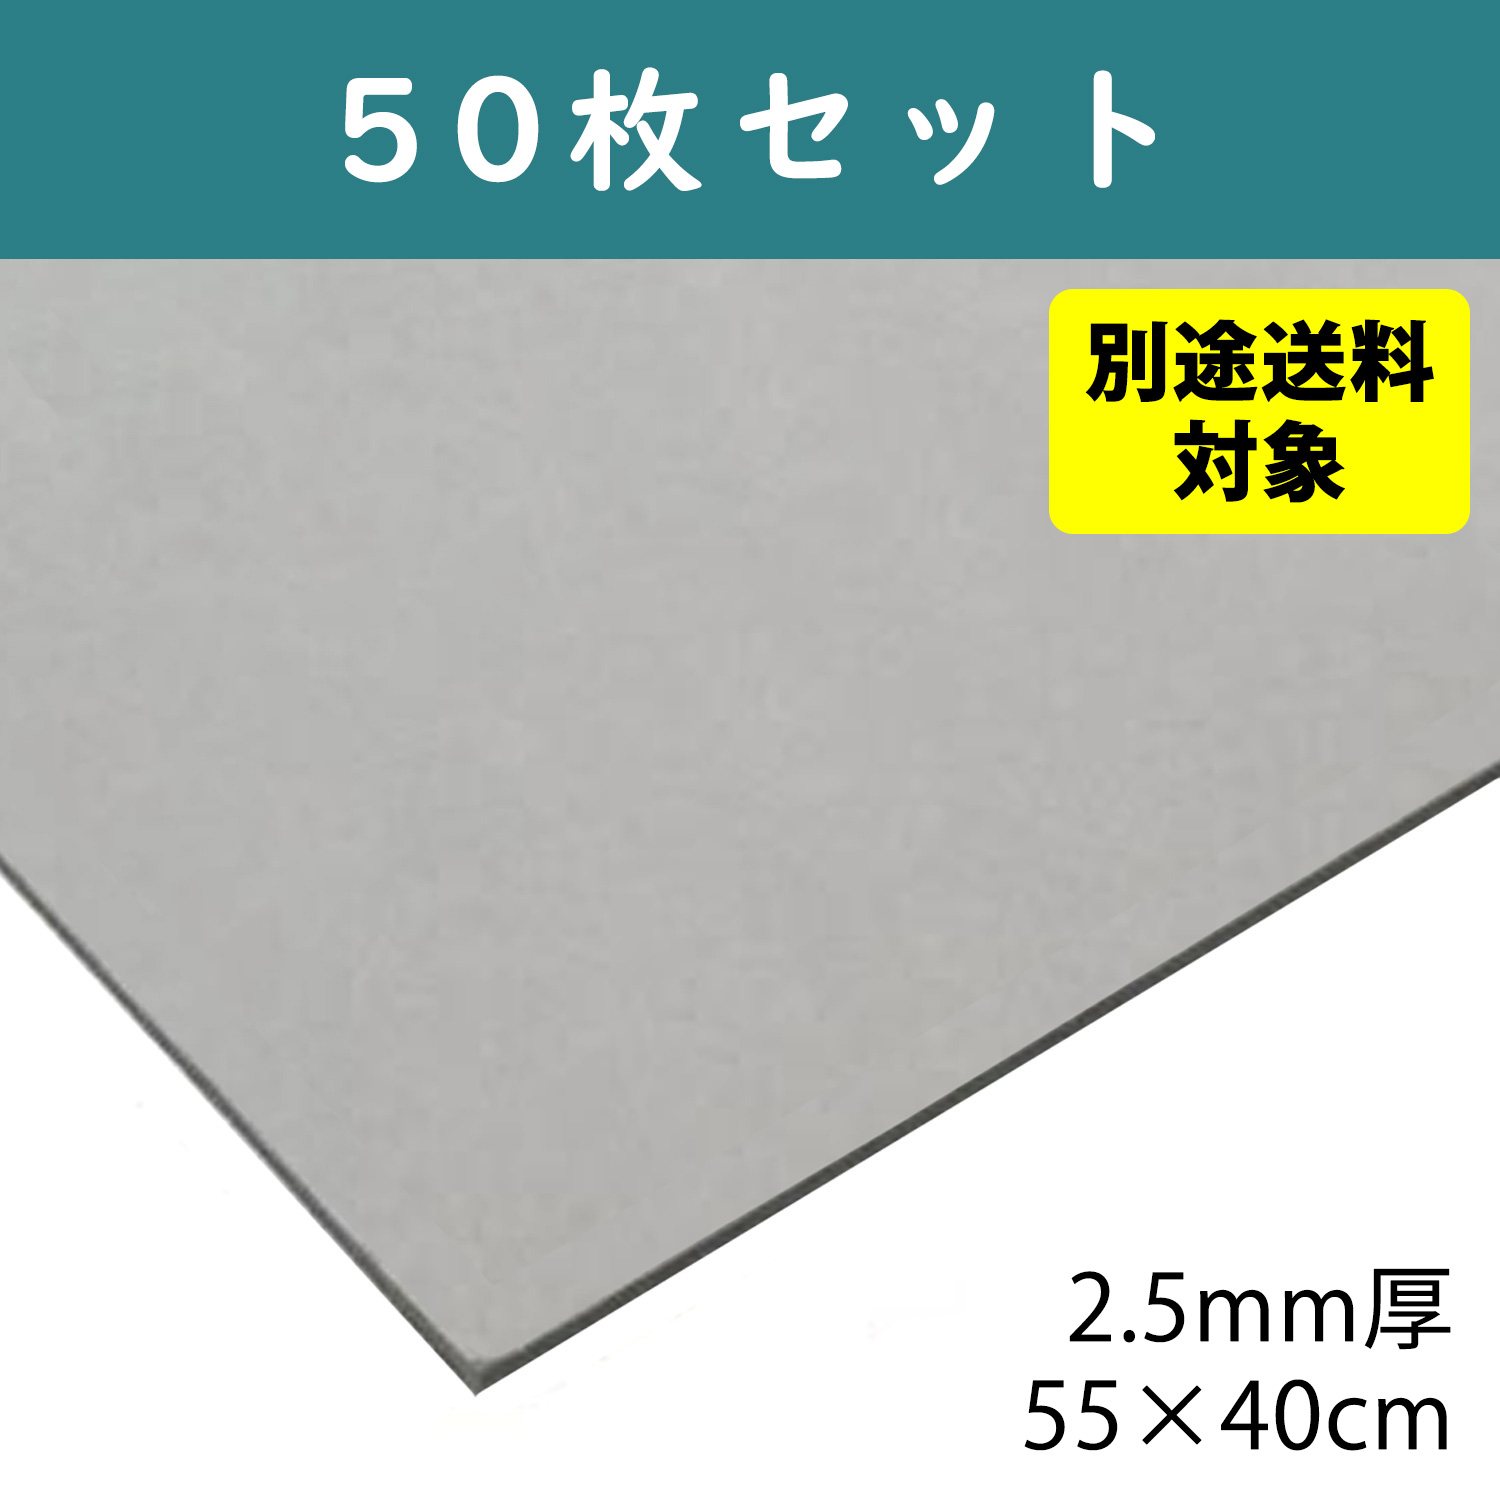 【+別途送料対象商品】CTN5-50 グレー厚紙 2.5mm厚 55×40cm 50枚入 (セット)